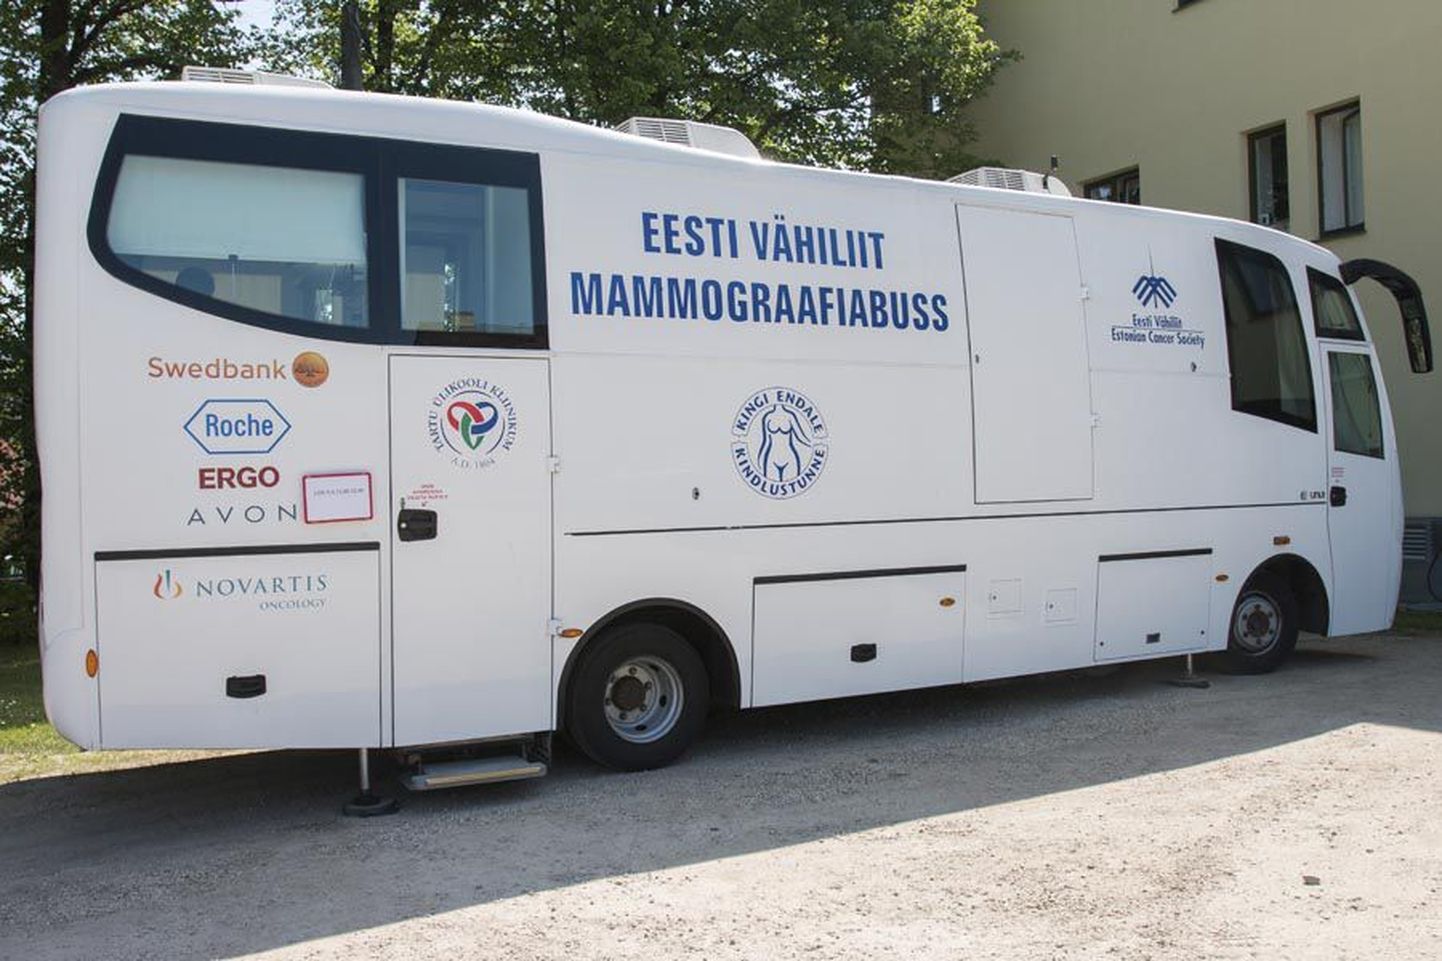 Mammograafiabuss on käinud Viljandis 2009. aastast saati ning seni alati tervisekeskuse hoovis parkinud. Et keskus küsib selle eest tasu, soovib bussi käitaja, et see peatuks edaspidi üsna vana koha lähedal Viljandi turu parklas. Pilt on tehtud tänavu suvel.